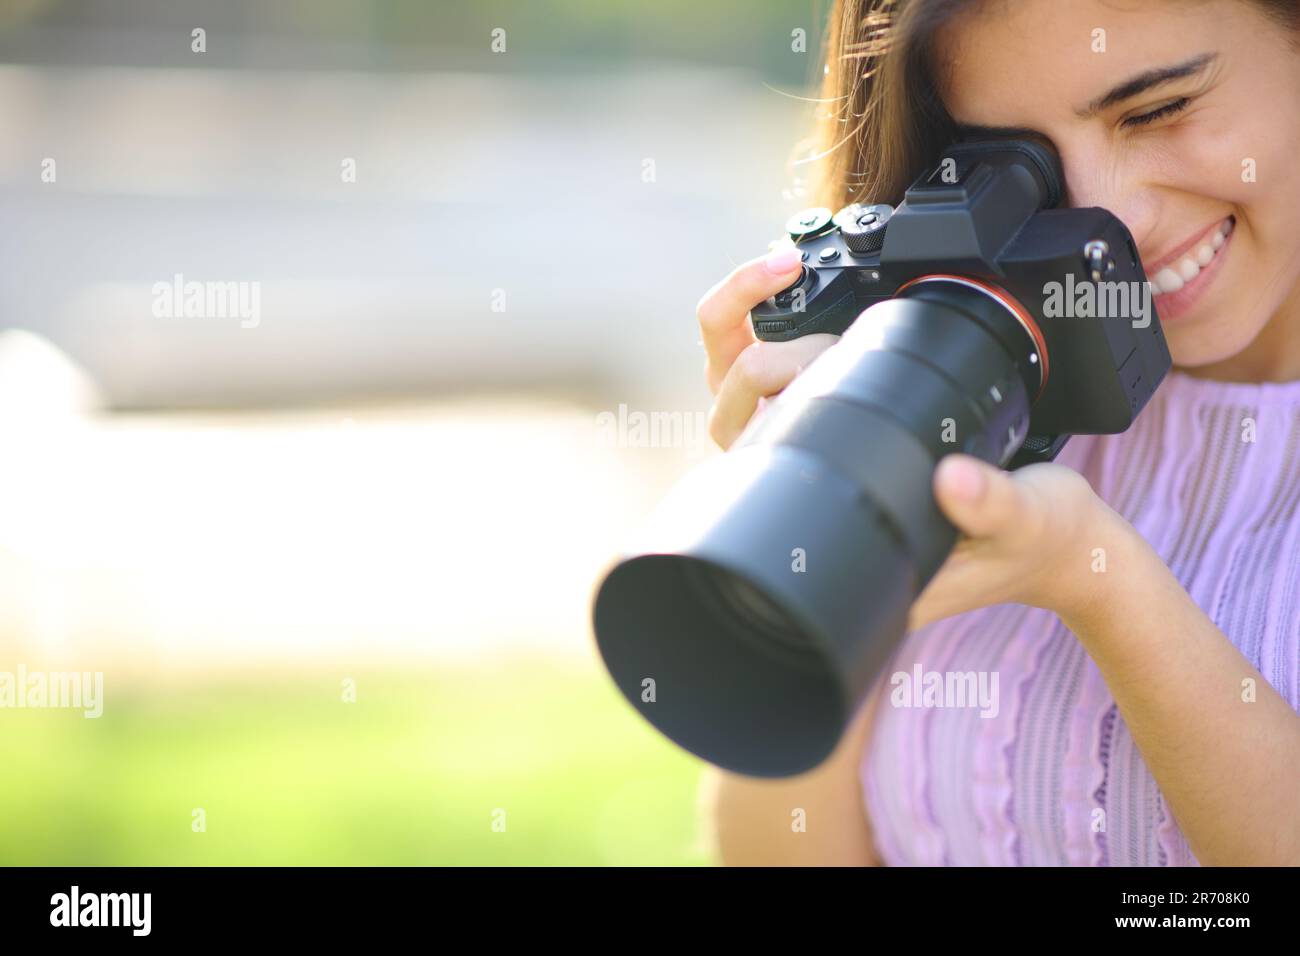 Glücklicher Fotograf, der ein Foto in einem Park mit Kopie macht Stockfoto